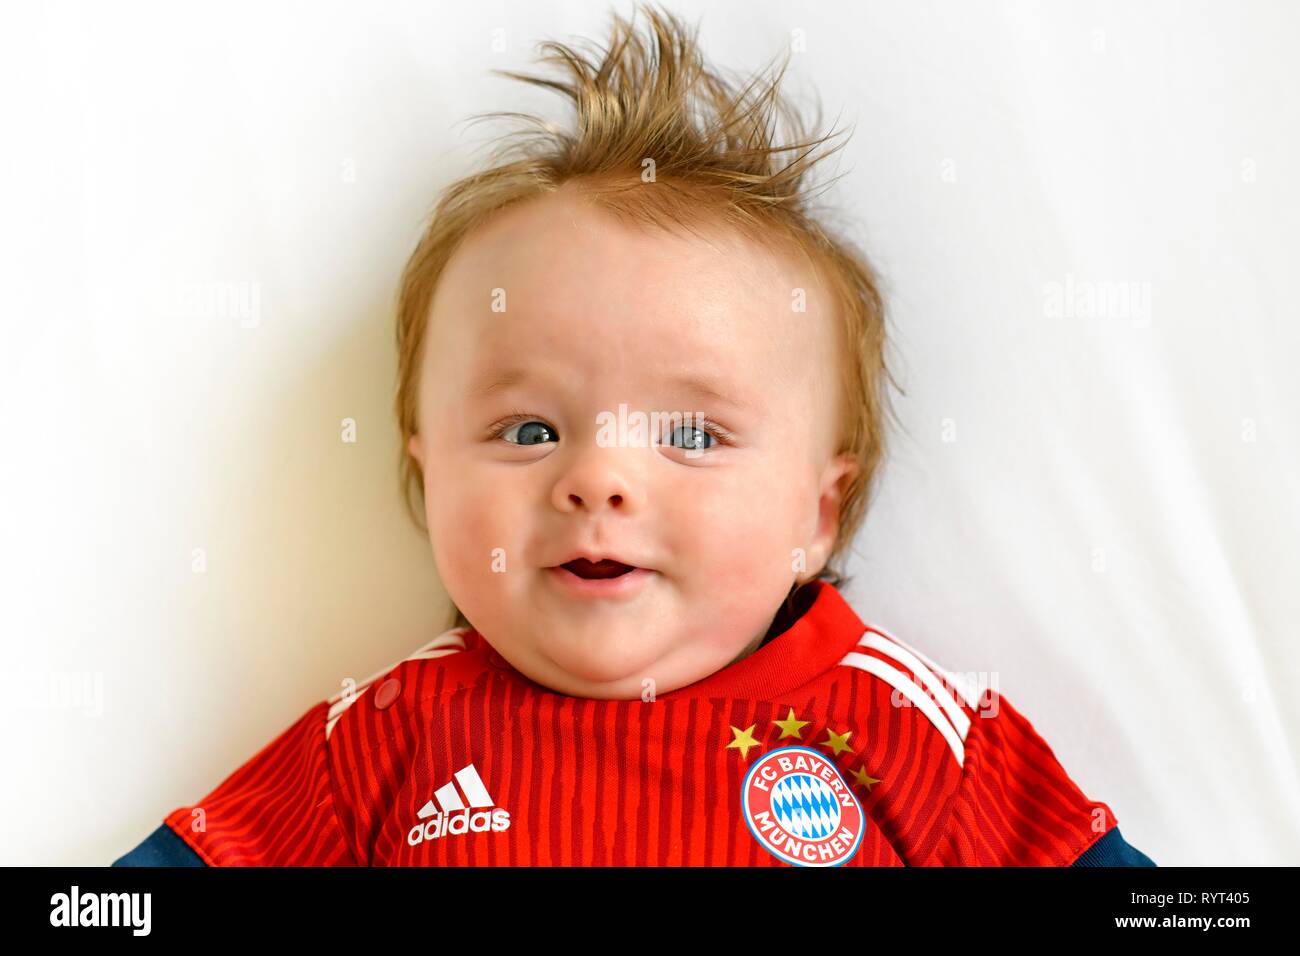 Bébé, 3 mois, dans la région de jersey du FC Bayern Munich, Portrait, Bade-Wurtemberg, Allemagne Banque D'Images